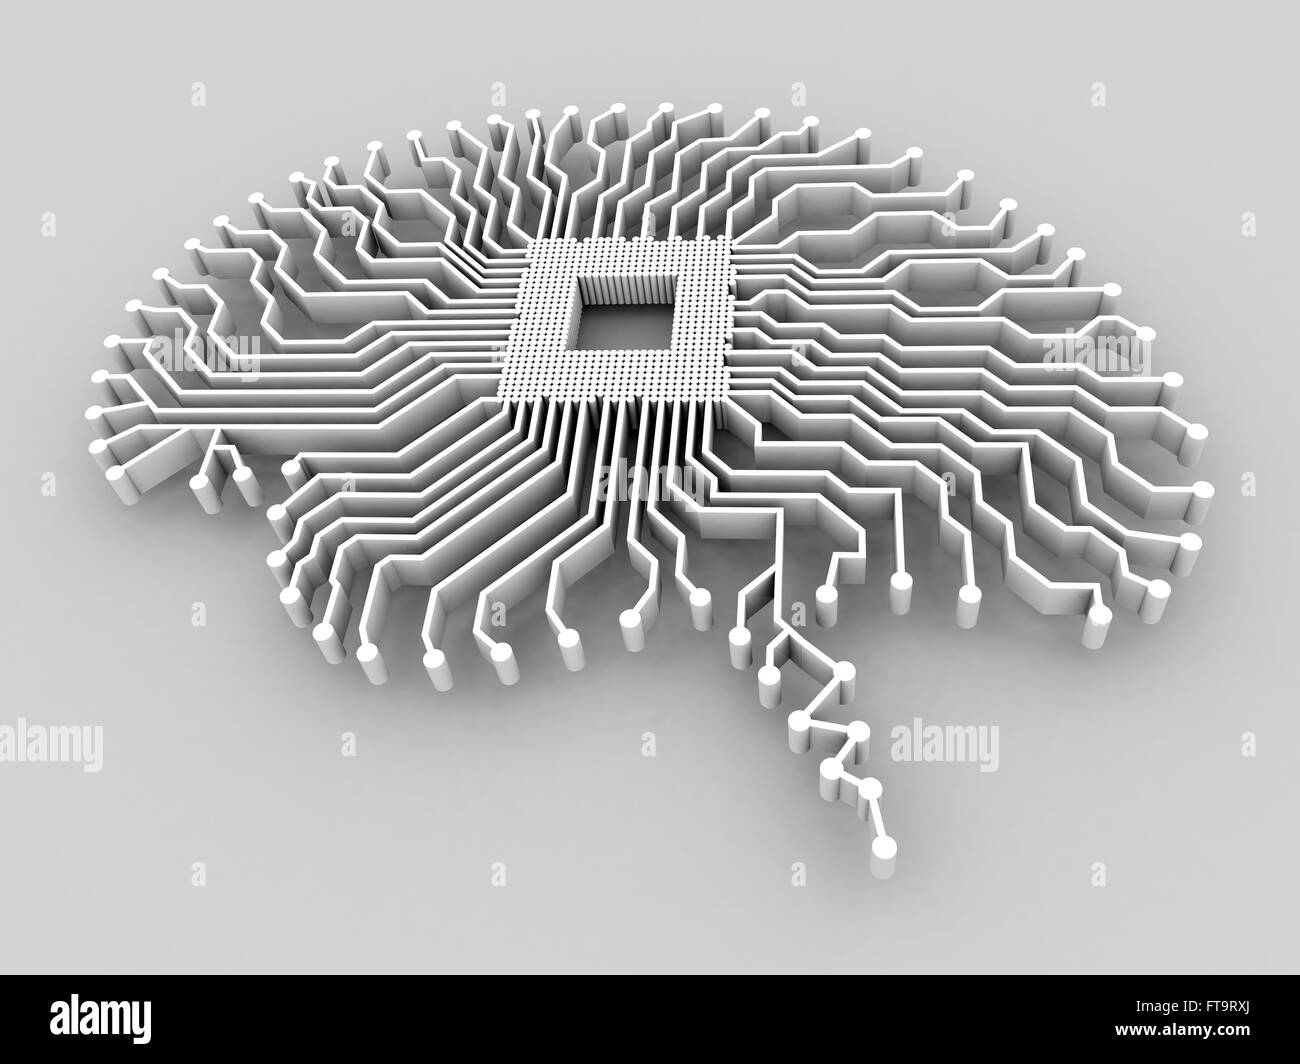 Künstliche Intelligenz. Illustration einer Gehirn-förmigen Leiterplatte. Stockfoto